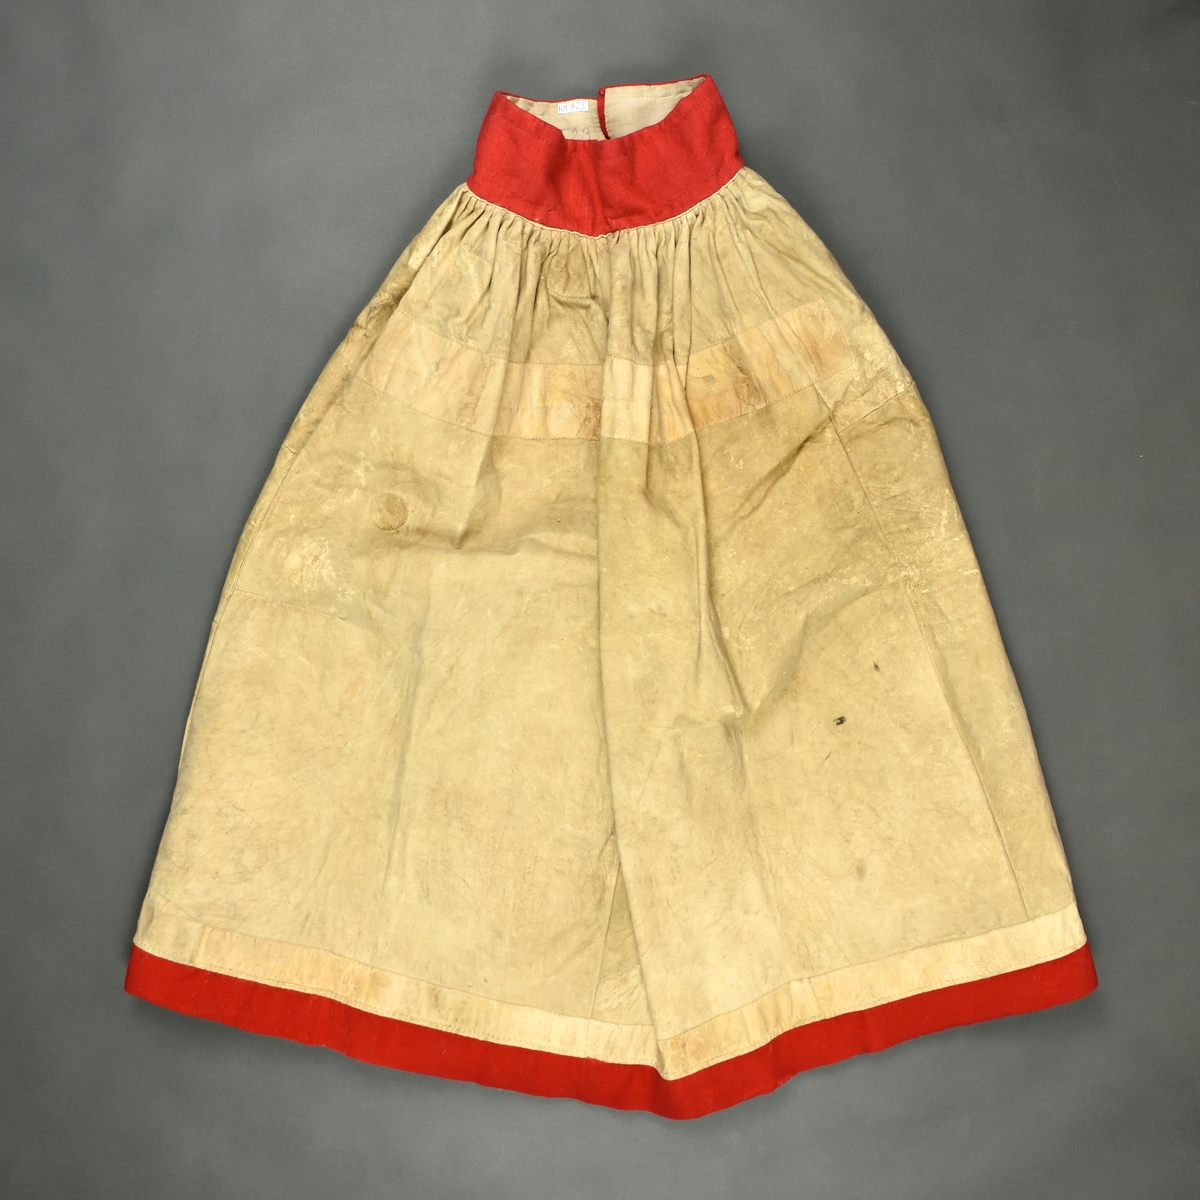 Kjol i skinn med pälssidan inåt som är sydd i fyra våder med rött kläde i linning och nertill.